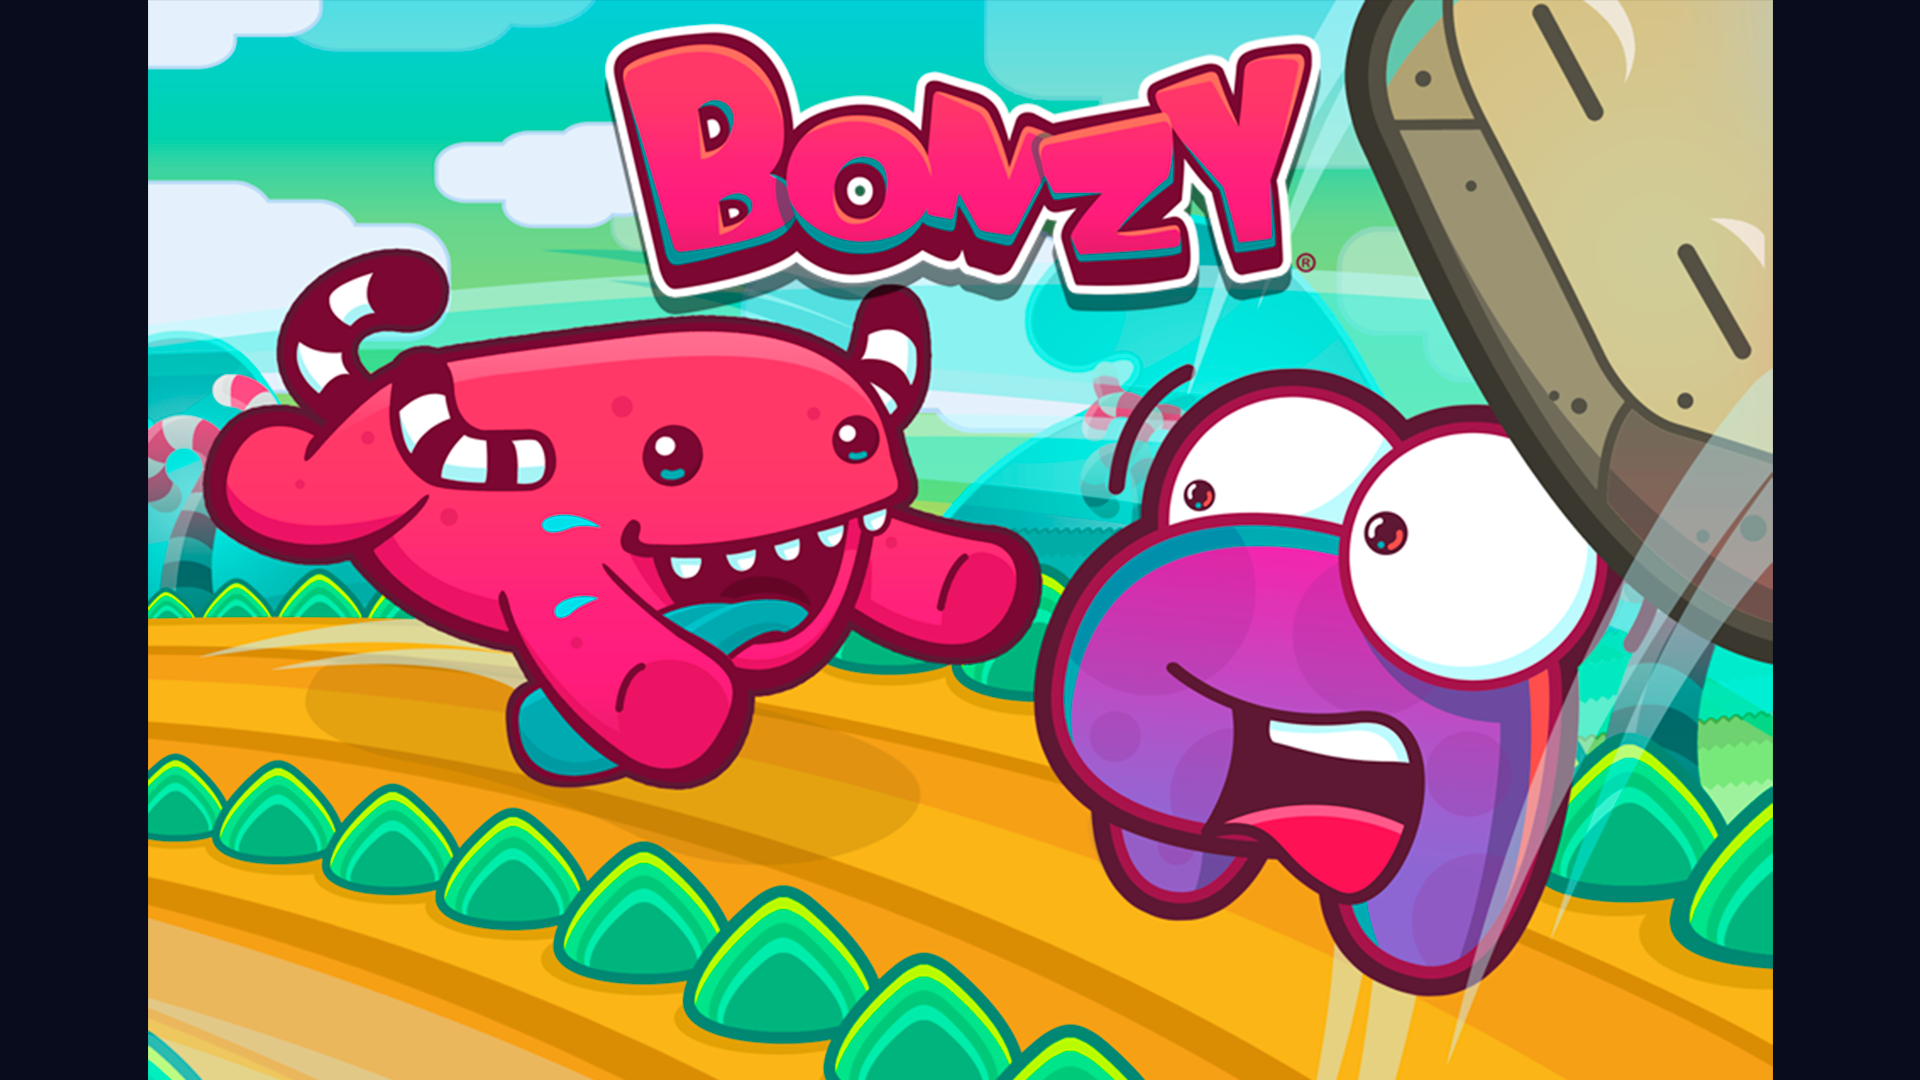 Bonzy - Key art 01